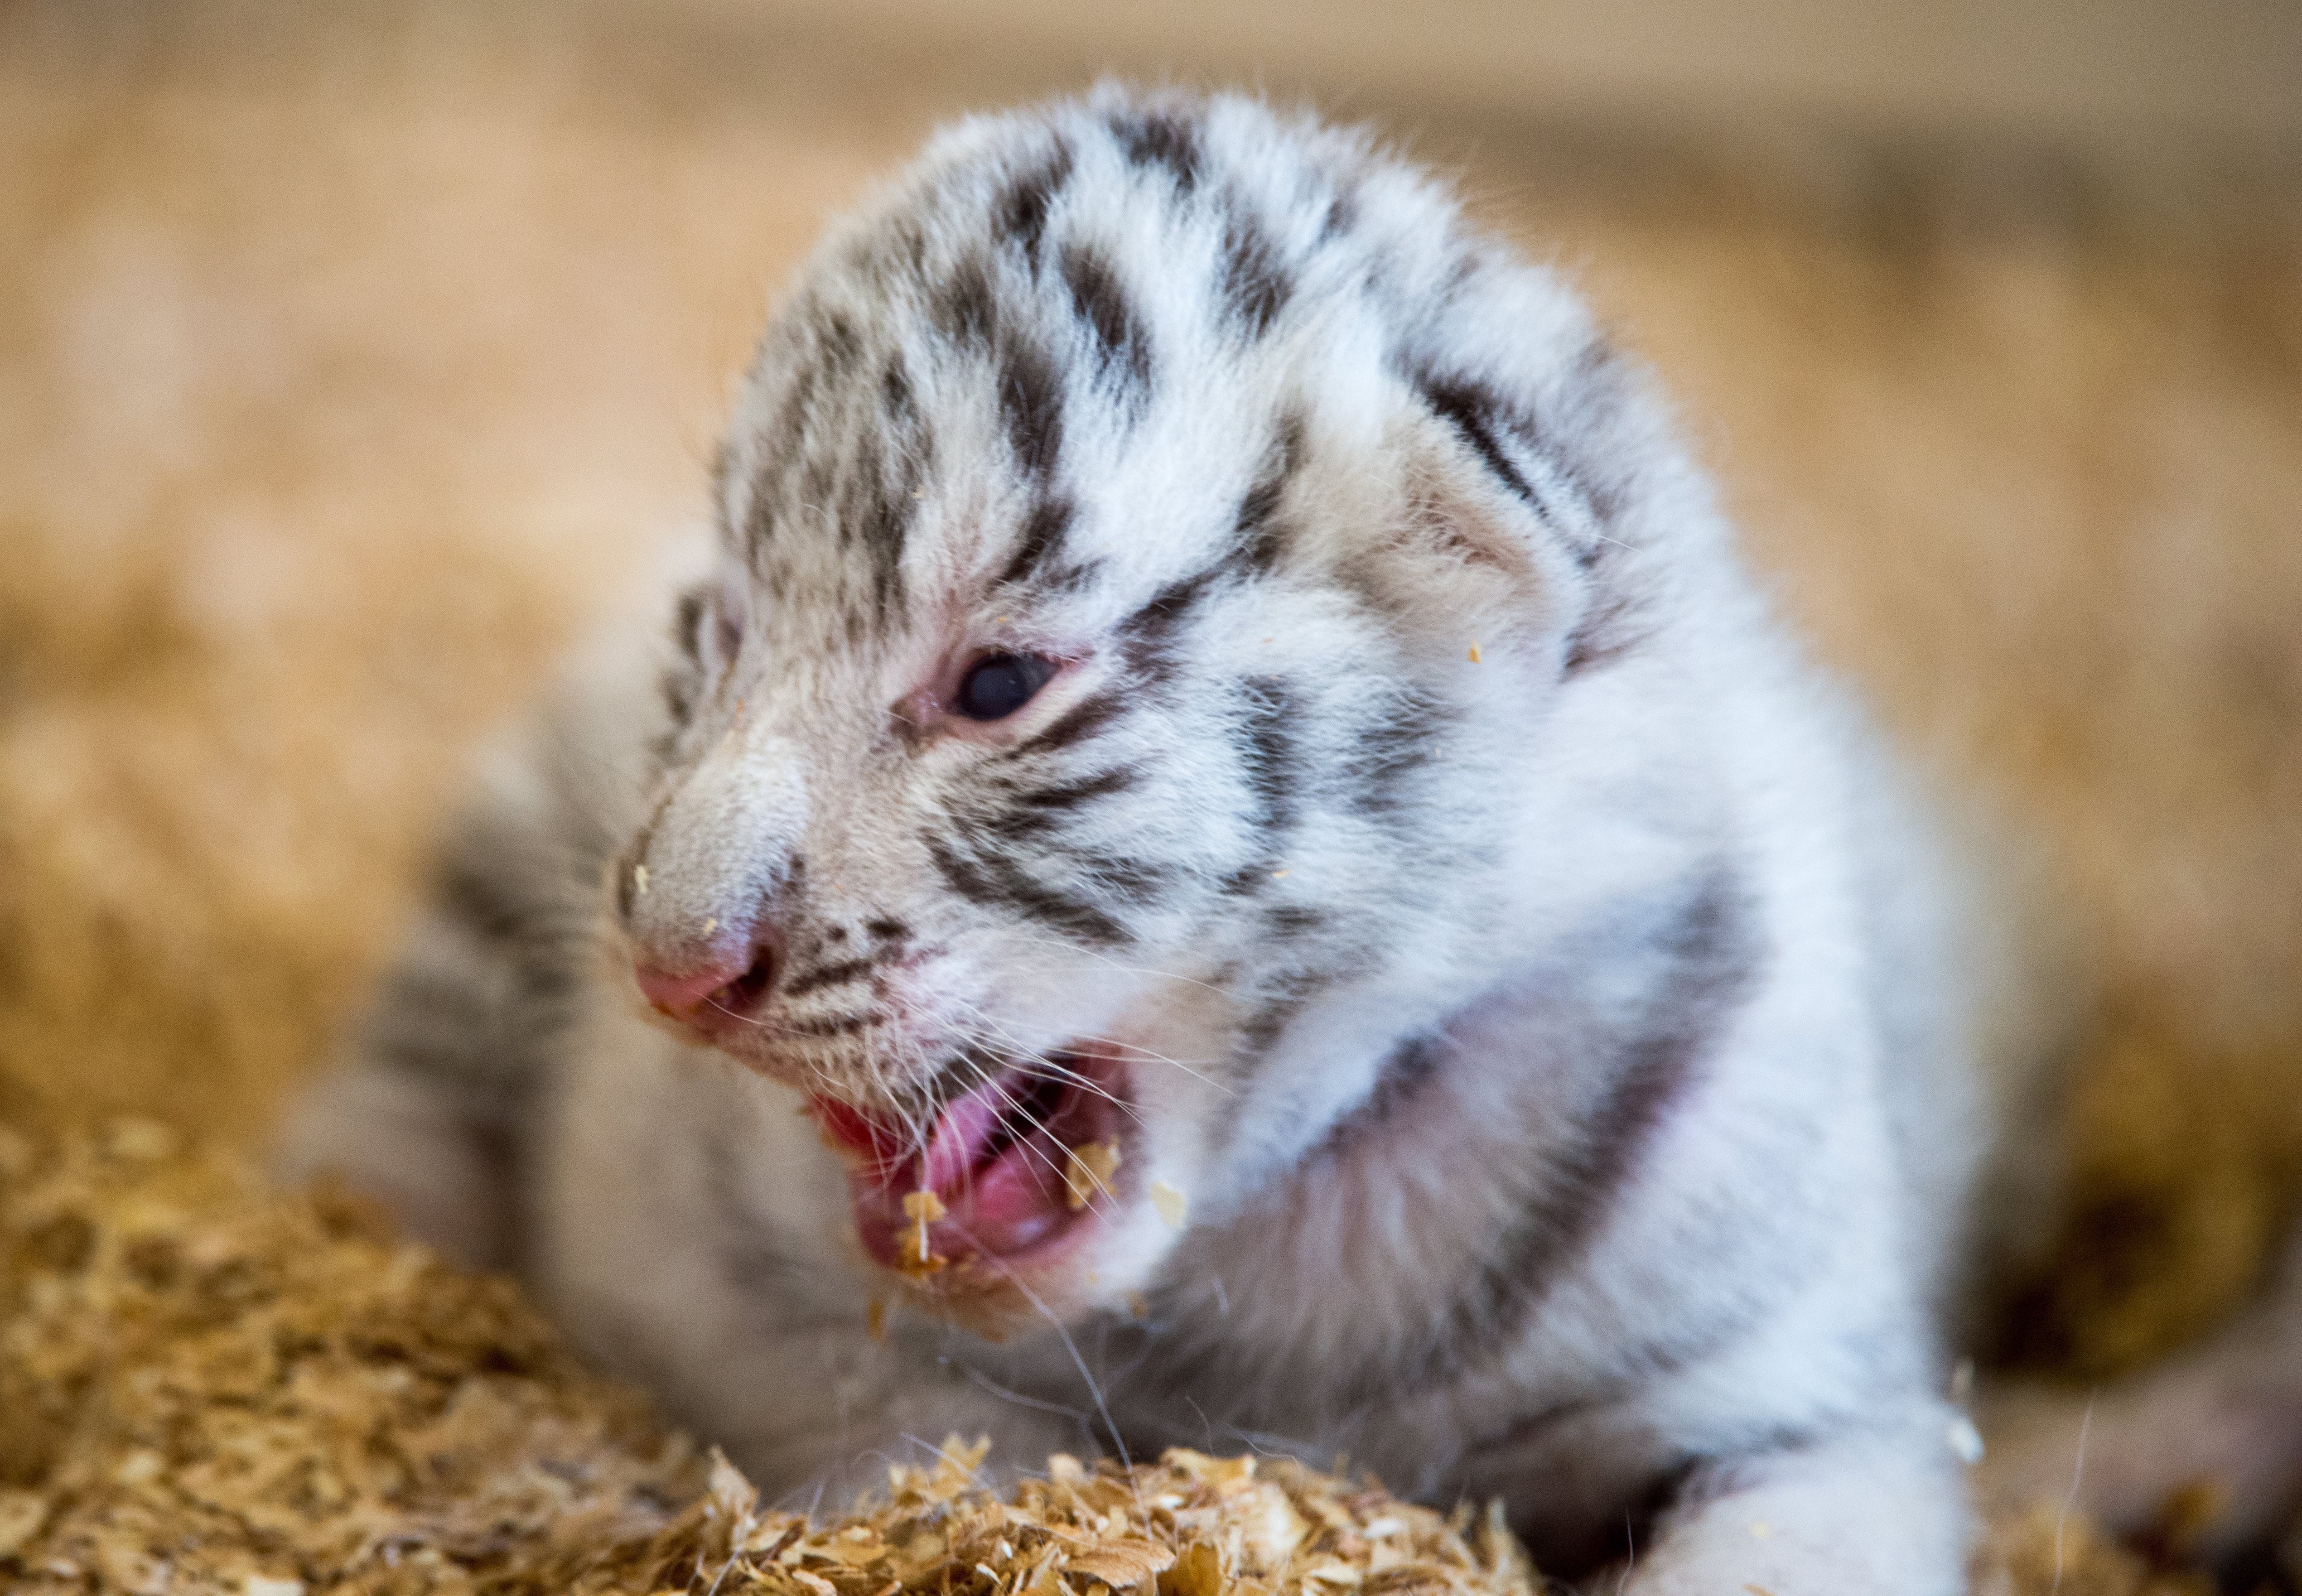 Австрийска зоологическа градина представи новородените си четири бели тигърчета - Фалко, Тото, Миа и Мауци, съобщи Ройтерс. Бялата зоологическа градина е на 150 км от Виена. Тя е популярна туристическа дестинация. Тигърчетата са се родили на 22 март. Те ще останат с майка си една година, а след това ще бъдат дарени на други зоологически градини.